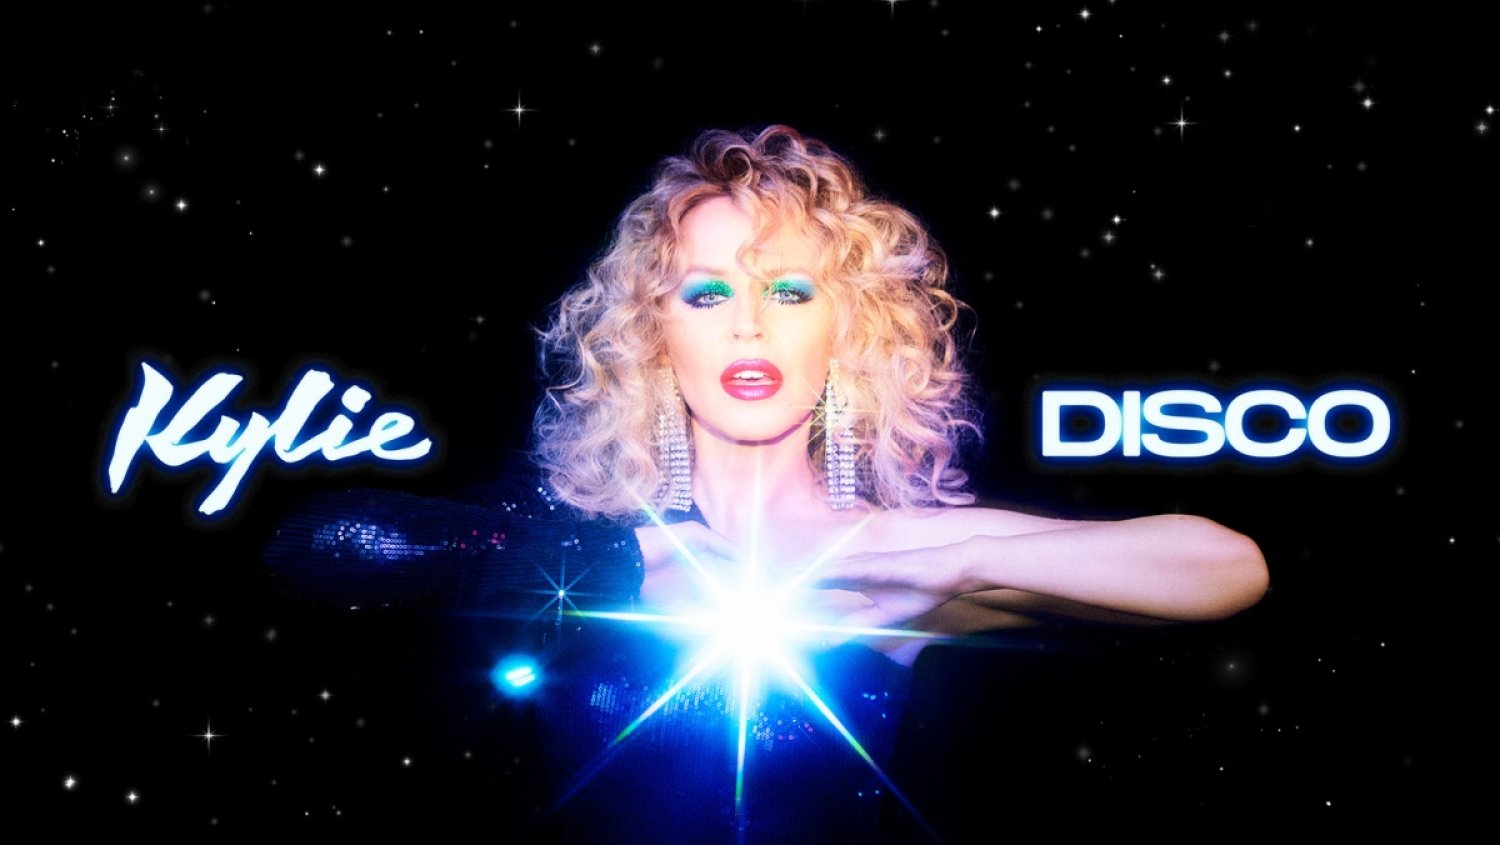 DISCO, le nouvel album de Kylie Minogue